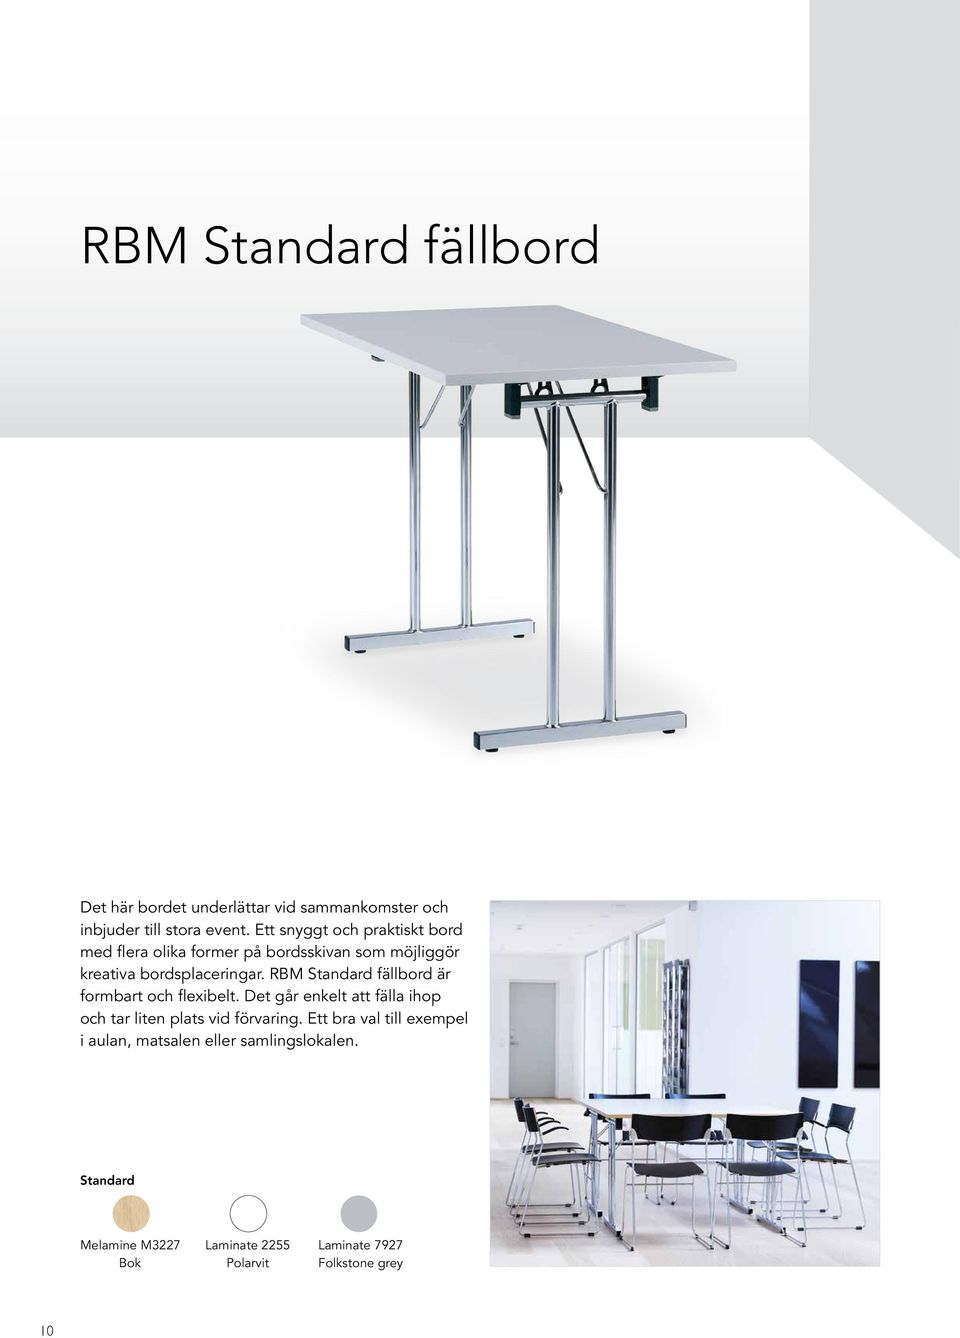 RBM Standard fällbord är formbart och flexibelt. Det går enkelt att fälla ihop och tar liten plats vid förvaring.